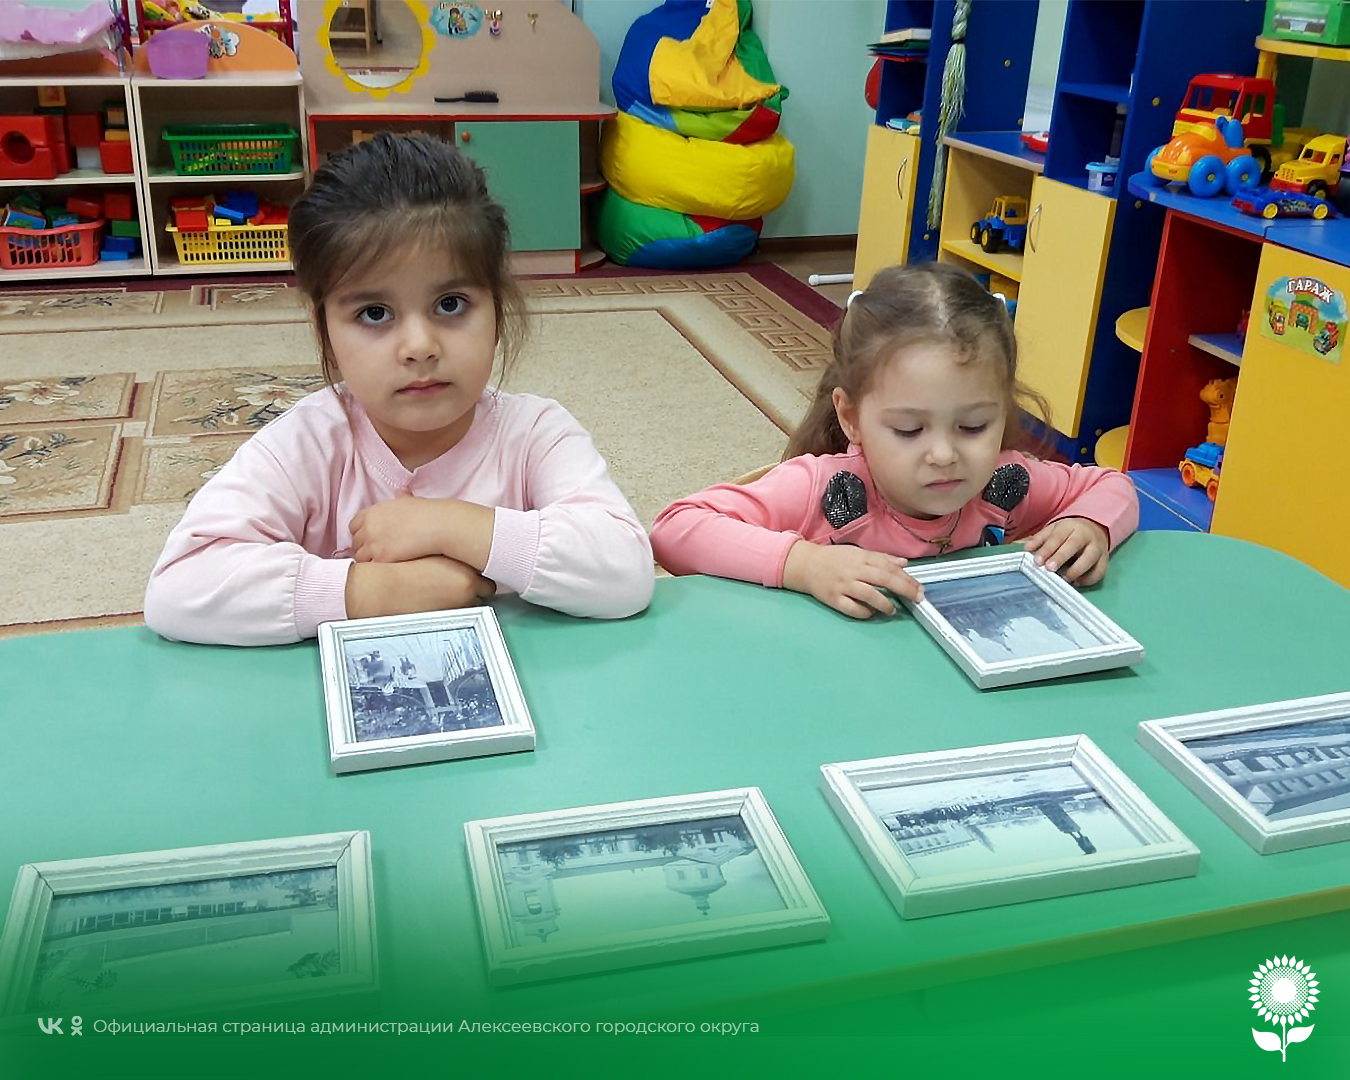 В детских садах Алексеевского городского округа прошёл День просмотра старых фотографий.